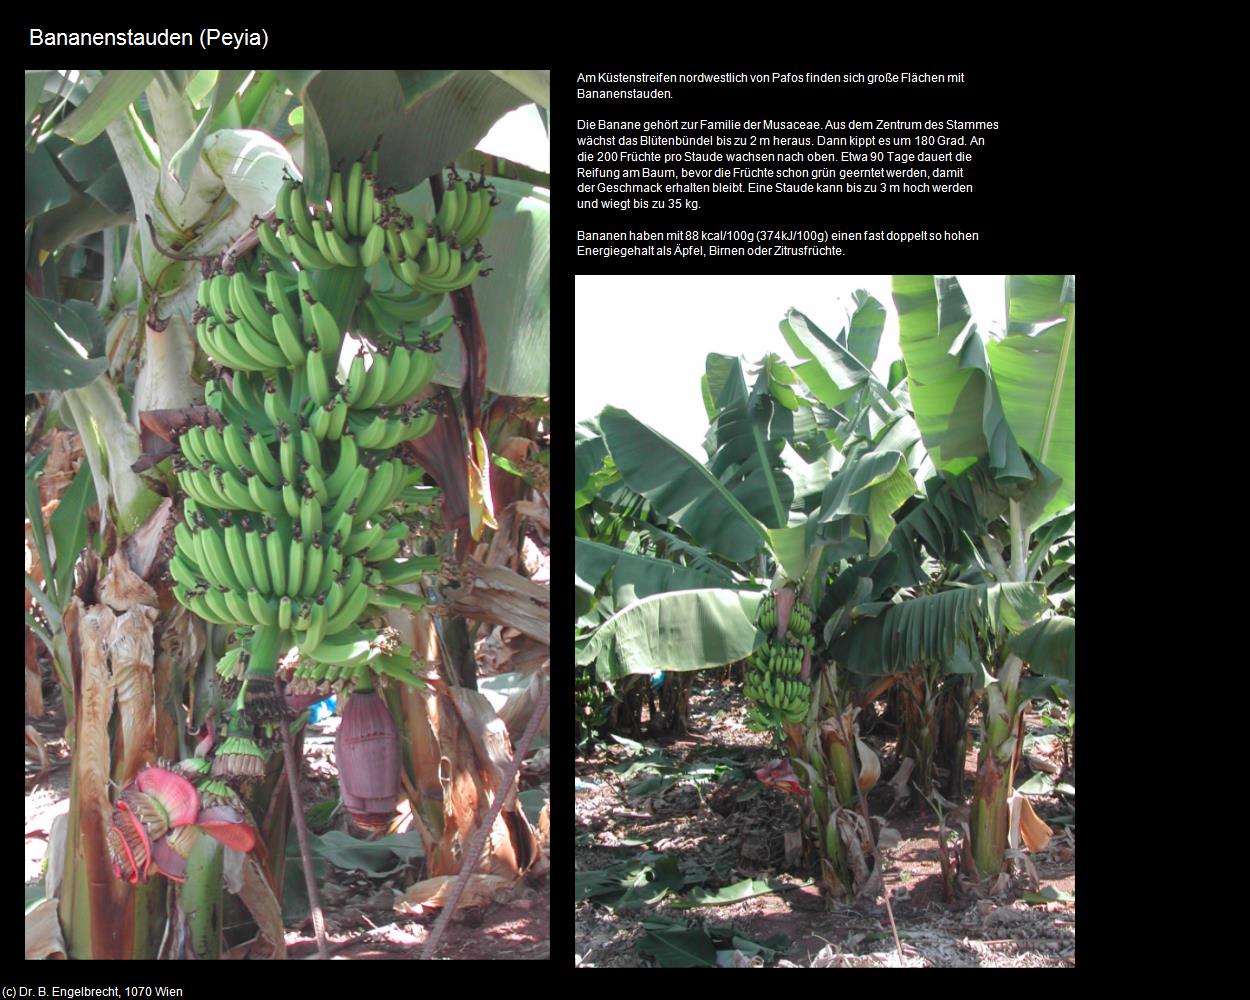 Bananenstauden (Peyia) in ZYPERN-Insel der Aphrodite